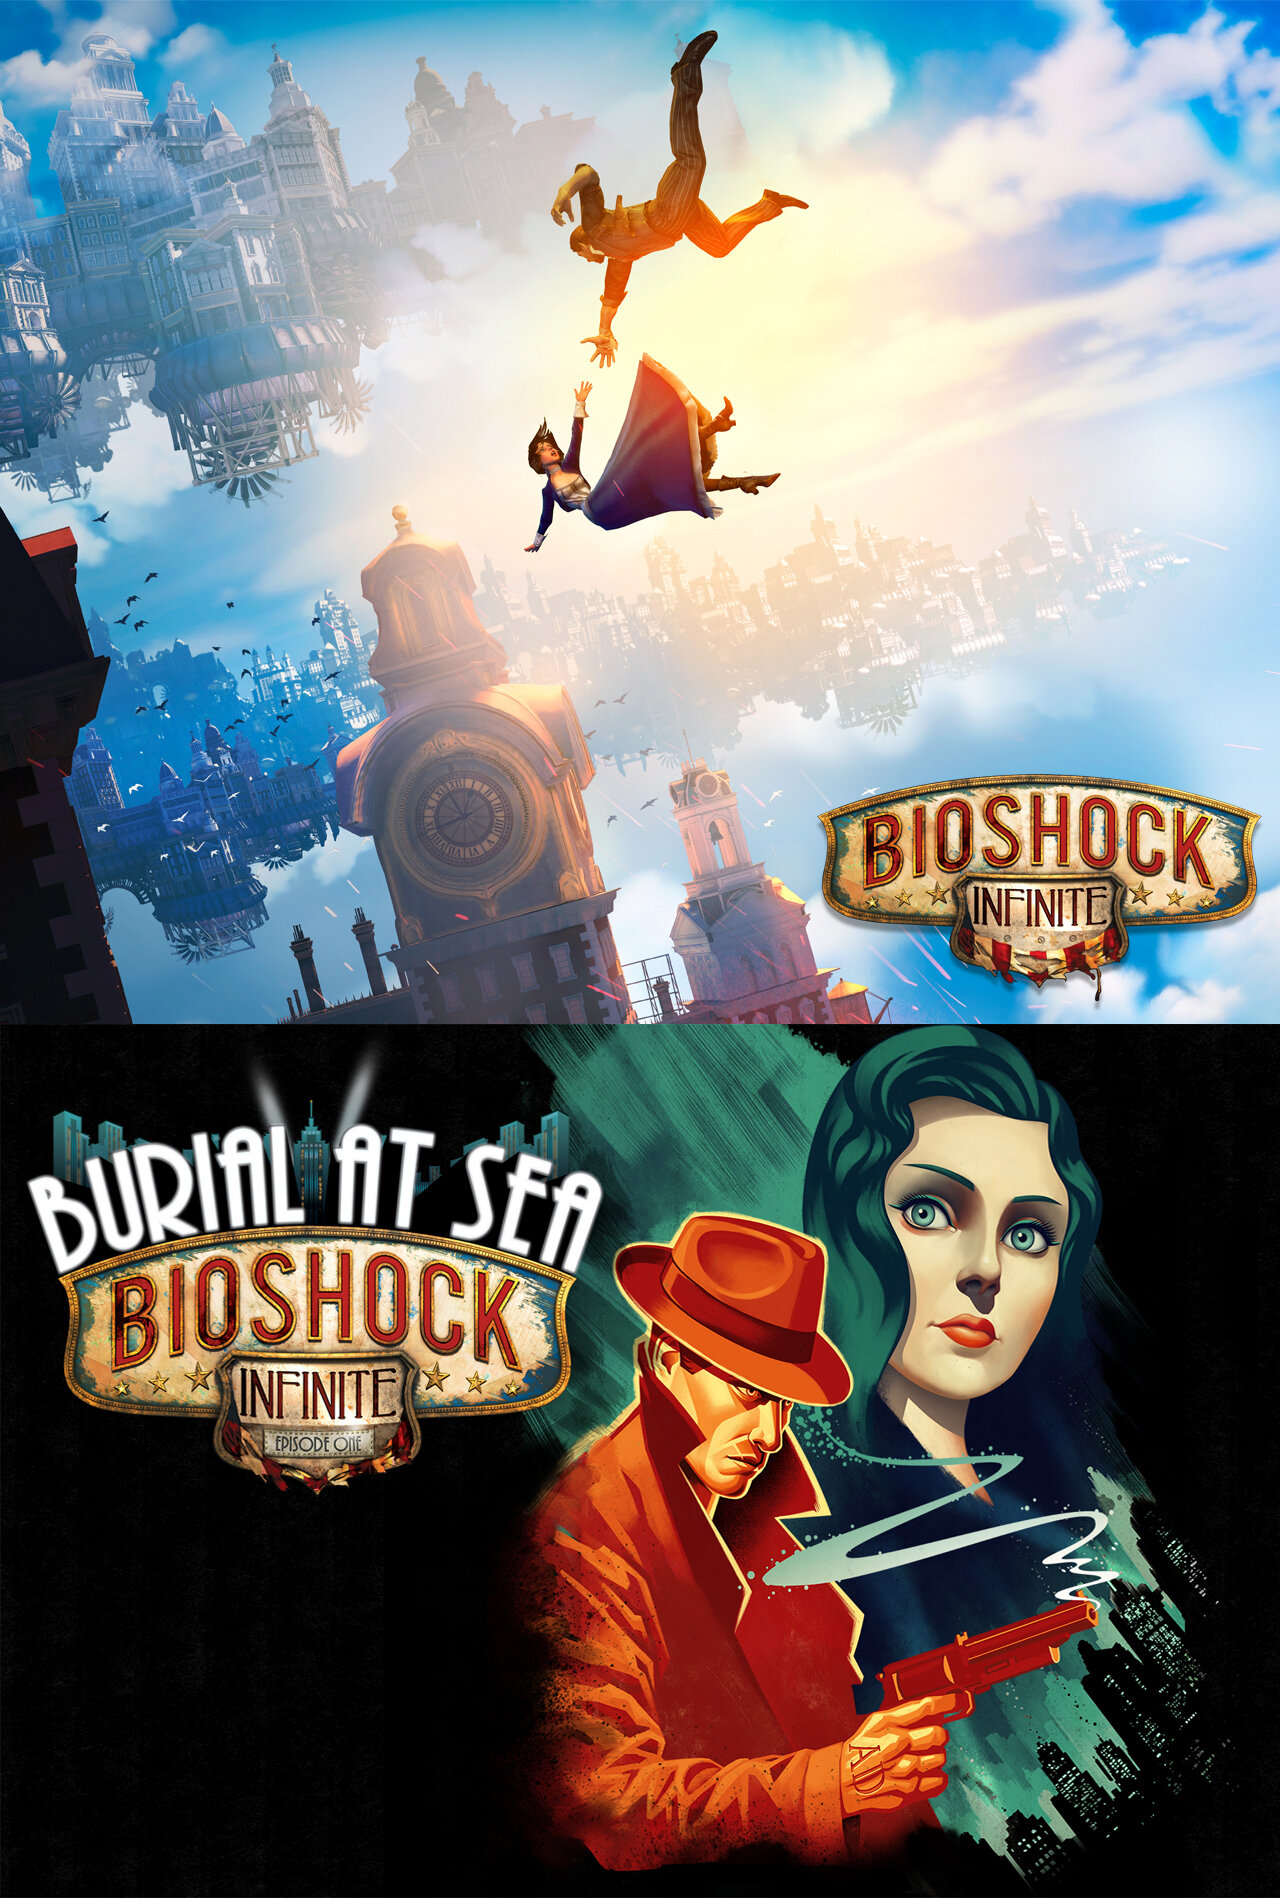 BioShock Infinite + Burial At Sea — François Roughol